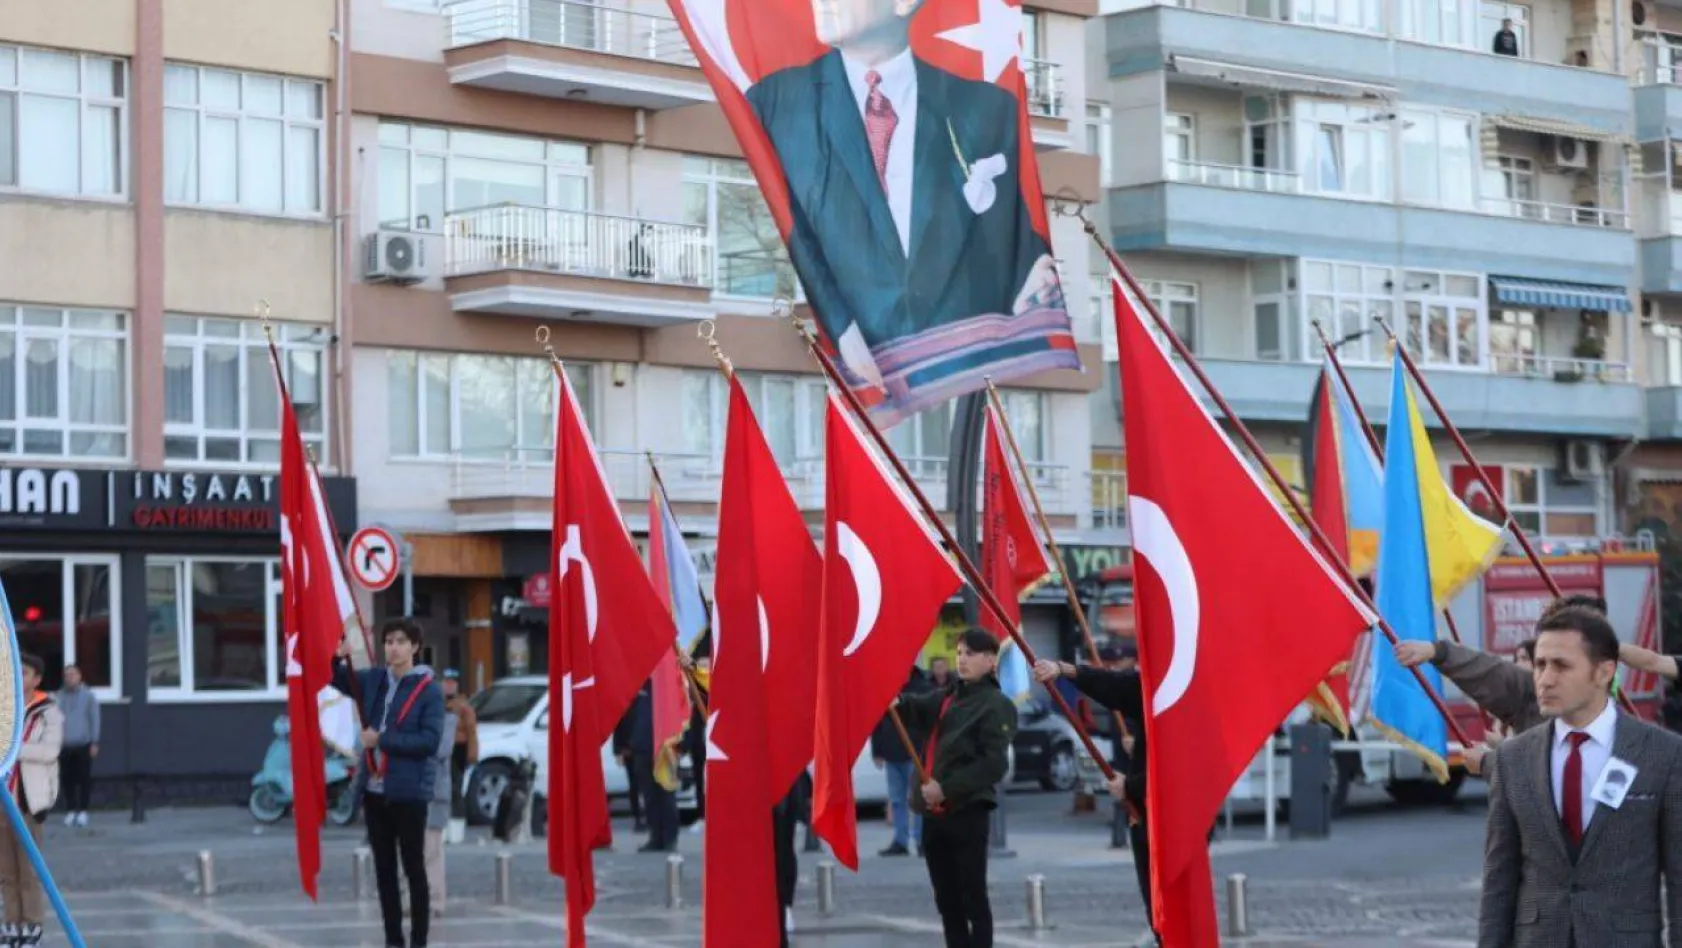 Silivri'nin kalbi 10 Kasım'da Atatürk için çarptı